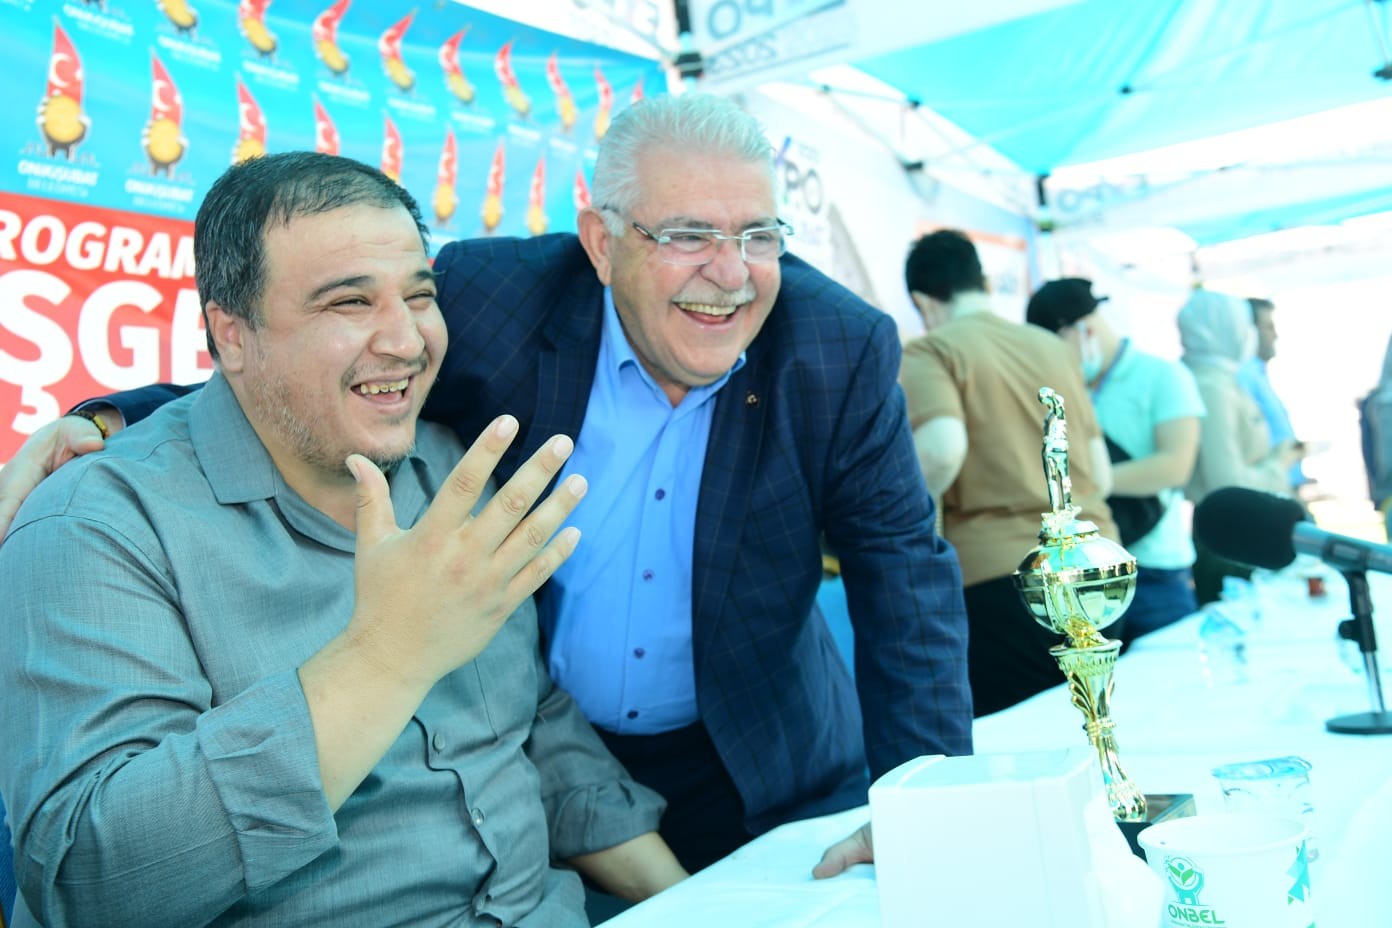 Başkan Mahçiçek, görme engellilere EXPO 2023’ü anlattı #kahramanmaras